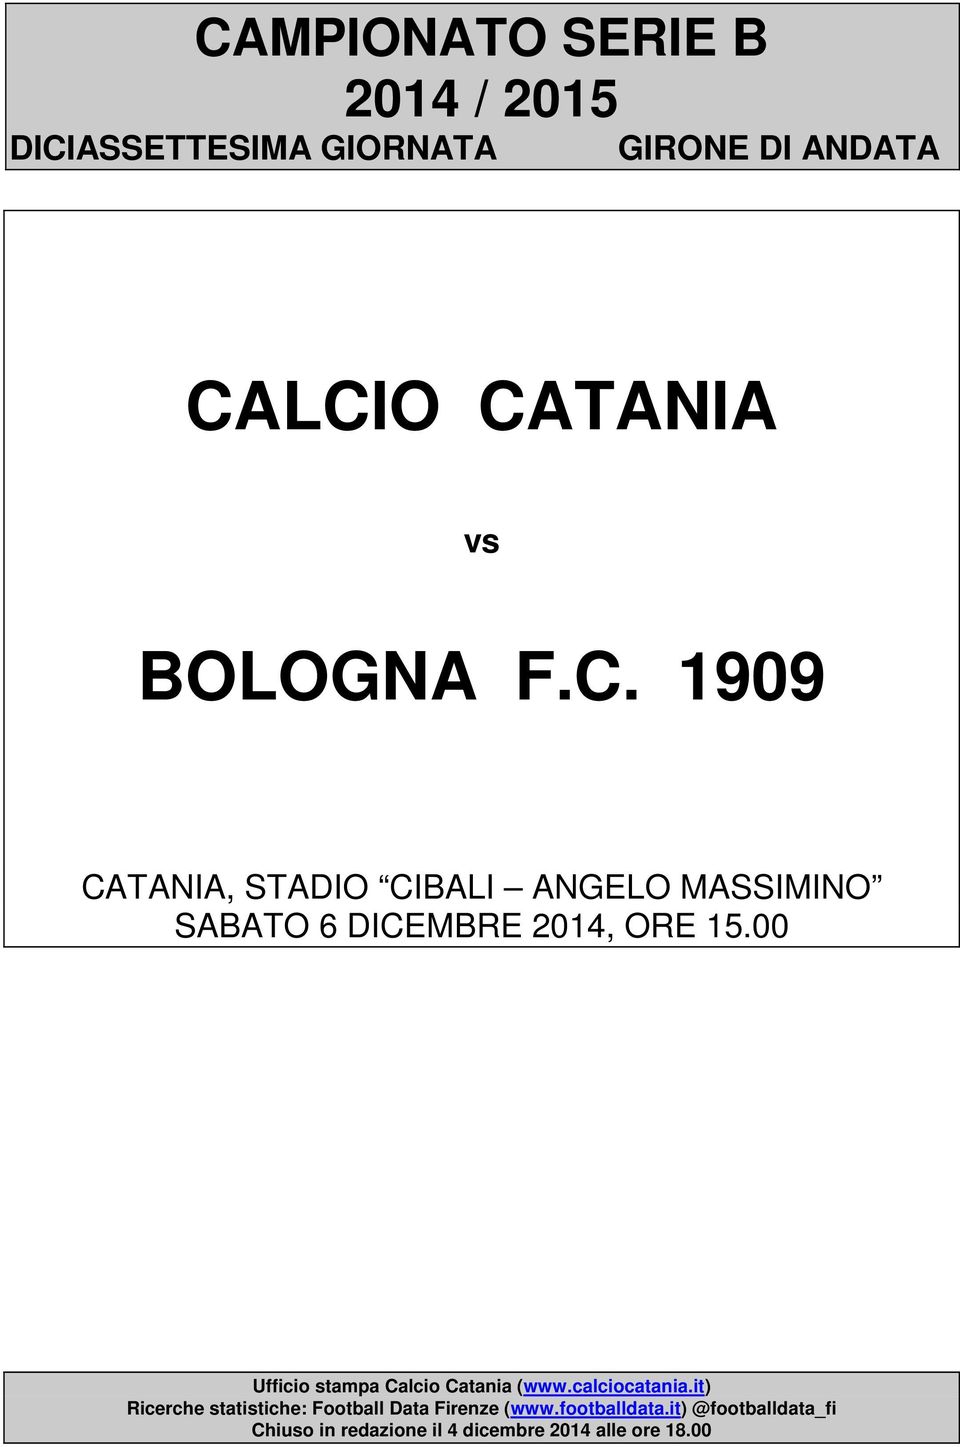 00 Ufficio stampa Calcio Catania (www.calciocatania.